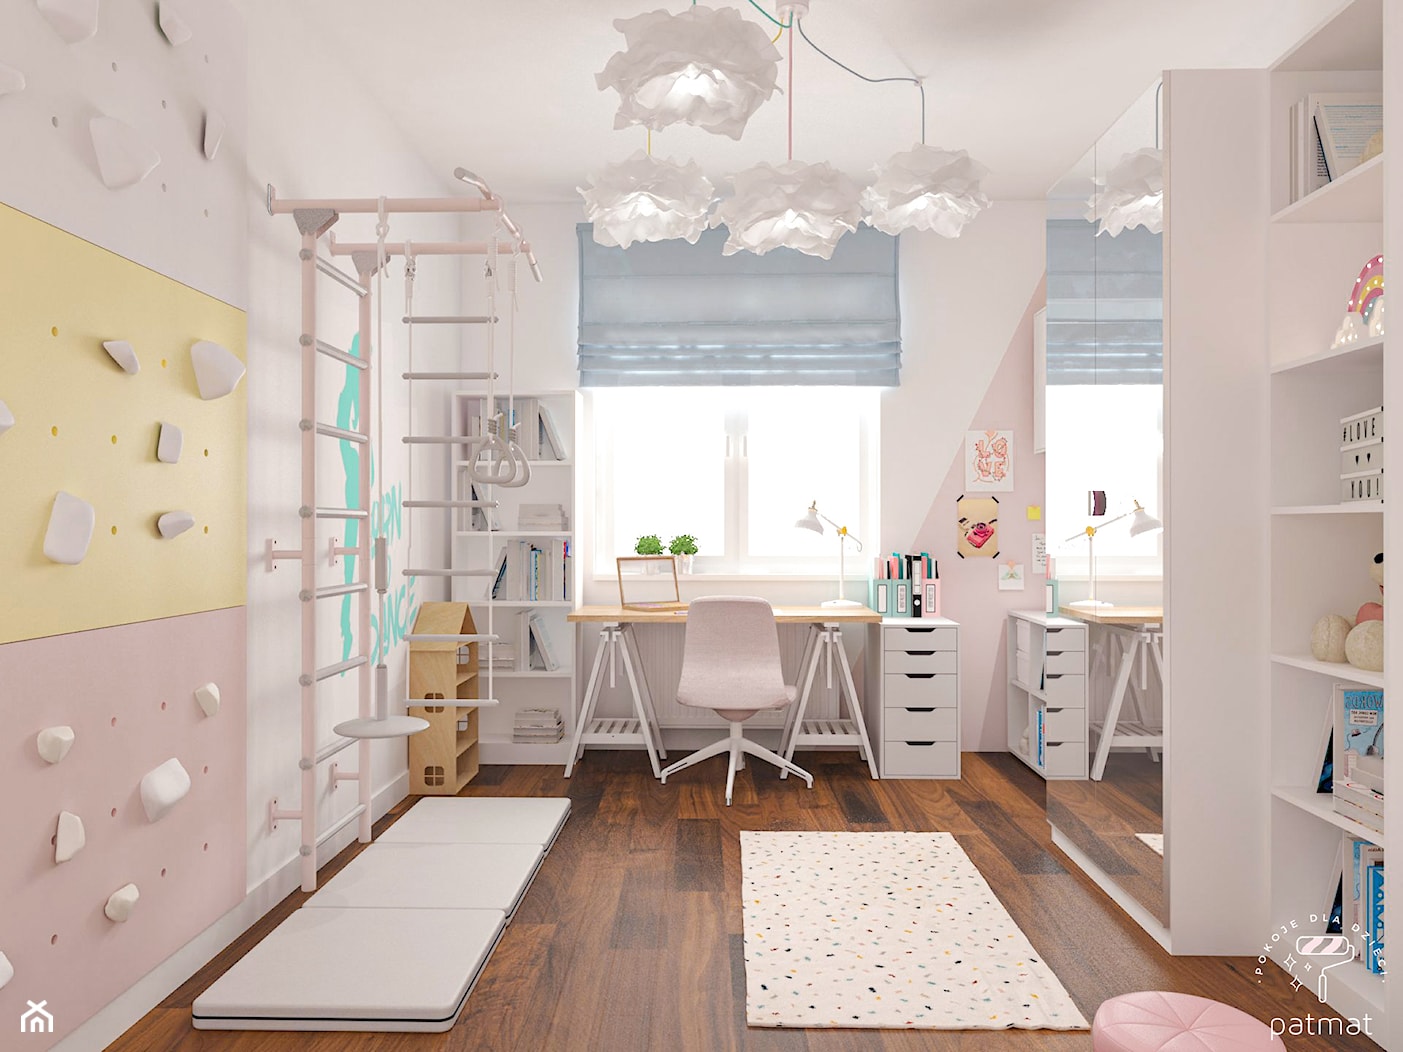 Pastelowy pokój dla dziewczynki - zdjęcie od patmat.pl - pokoje dla dzieci @patmatstudio - Homebook